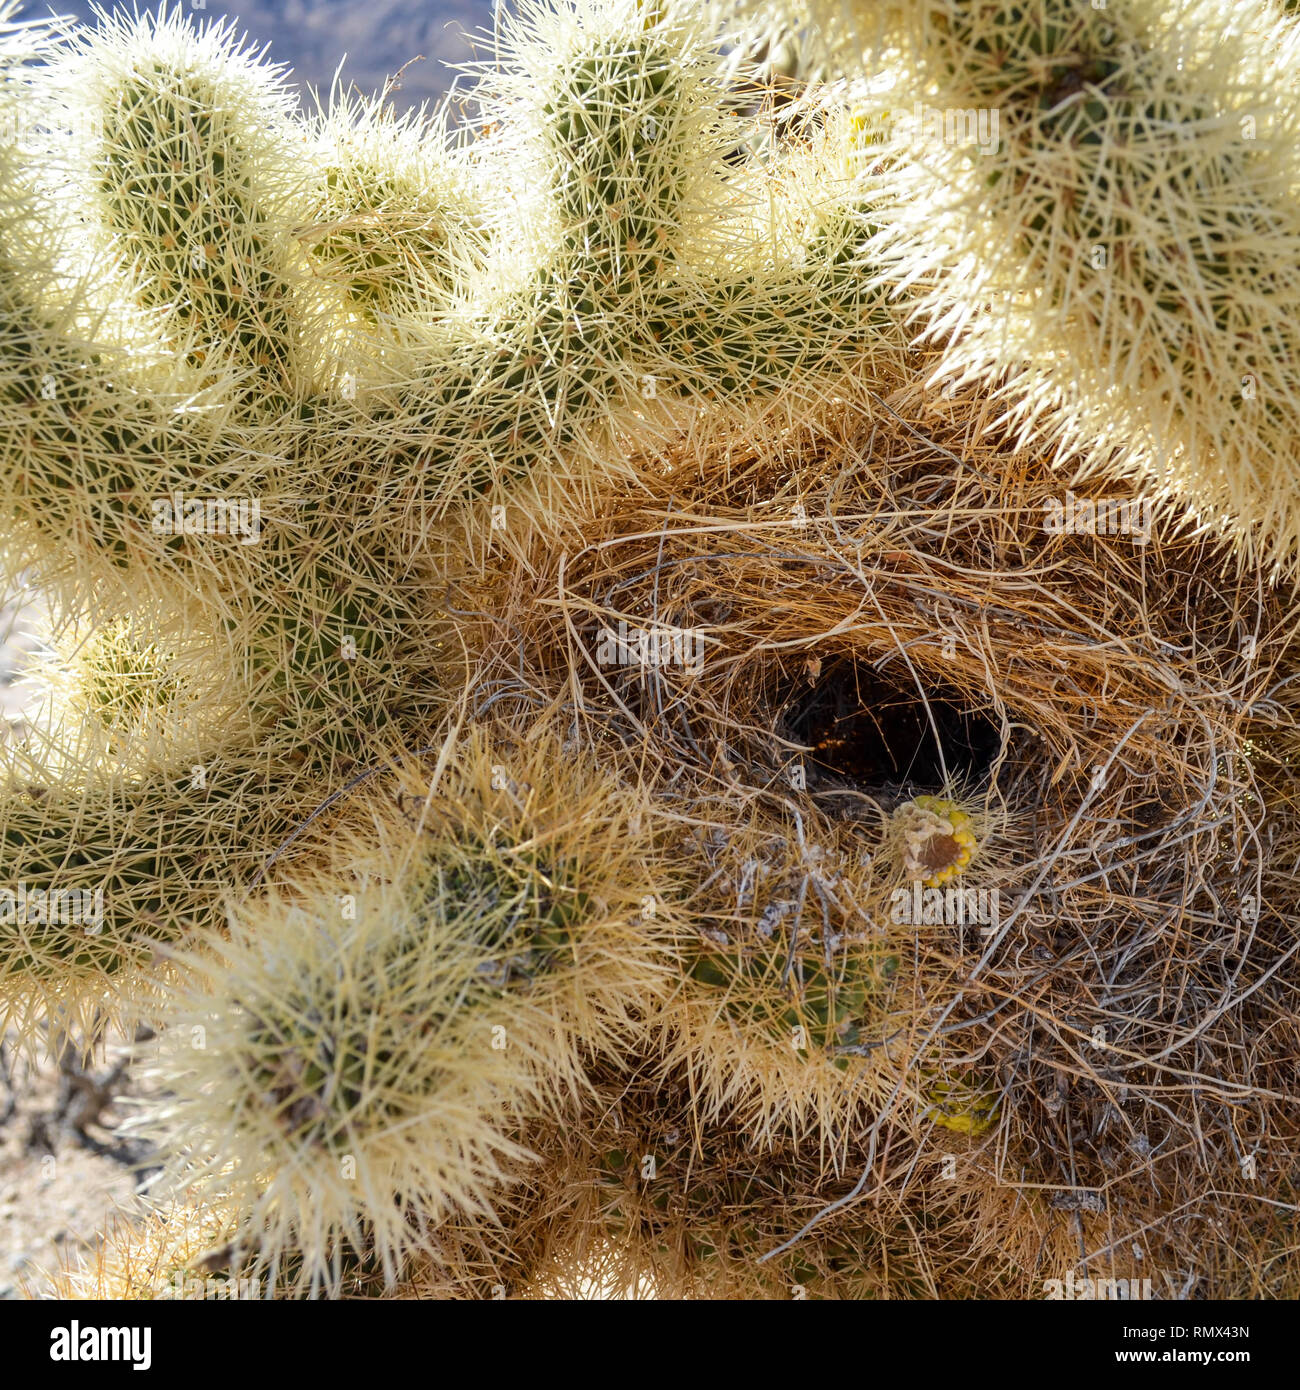 Teddybär cholla Cactus (Cylindropuntia Bigelovii) mit einem Kaktus wren (Campylorhynchus brunneicapillus) Nest, Joshua Tree National Park, Kalifornien Stockfoto